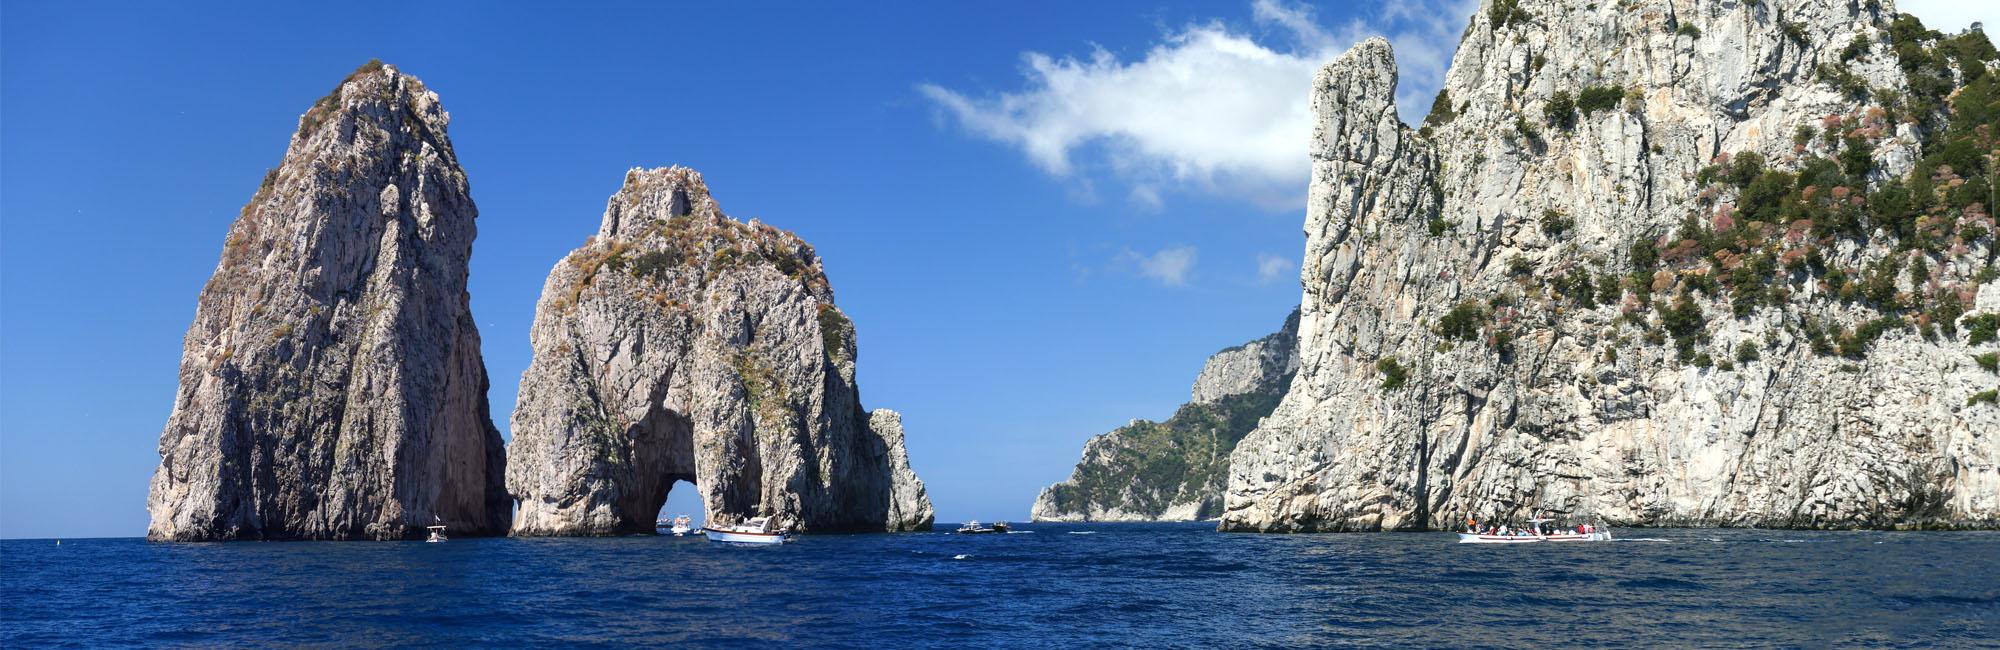 Acantilados de Amalfi y Capri